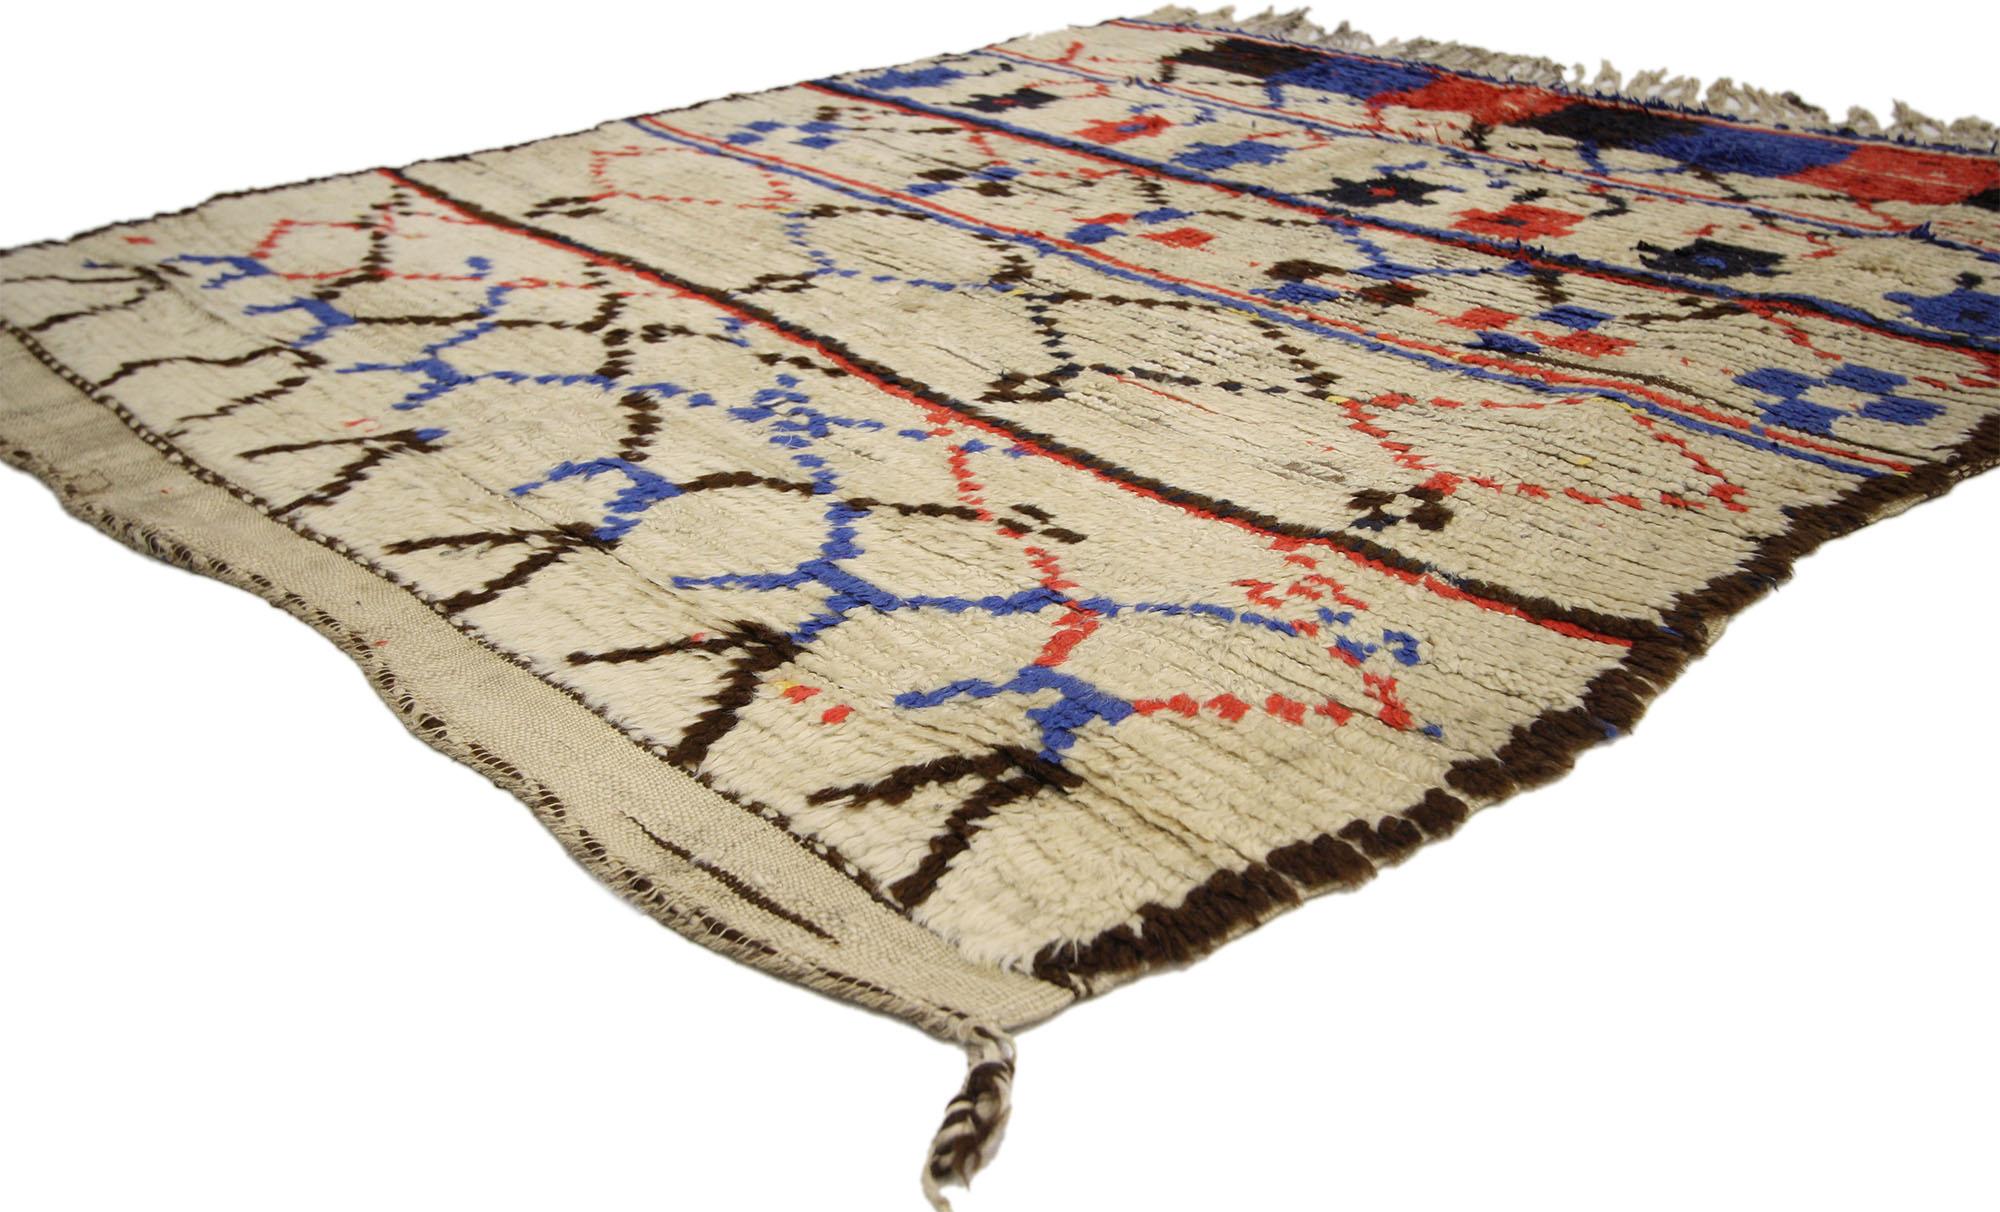 74548 Vintage Marokkanischer Azilal-Teppich, 04'03 x 04'07. Entdecken Sie das illustre Erbe der Azilal-Teppiche, die aus dem geschäftigen Herzen der Provinzhauptstadt in Zentralmarokko stammen, die inmitten des Hohen Atlasgebirges liegt. Die für